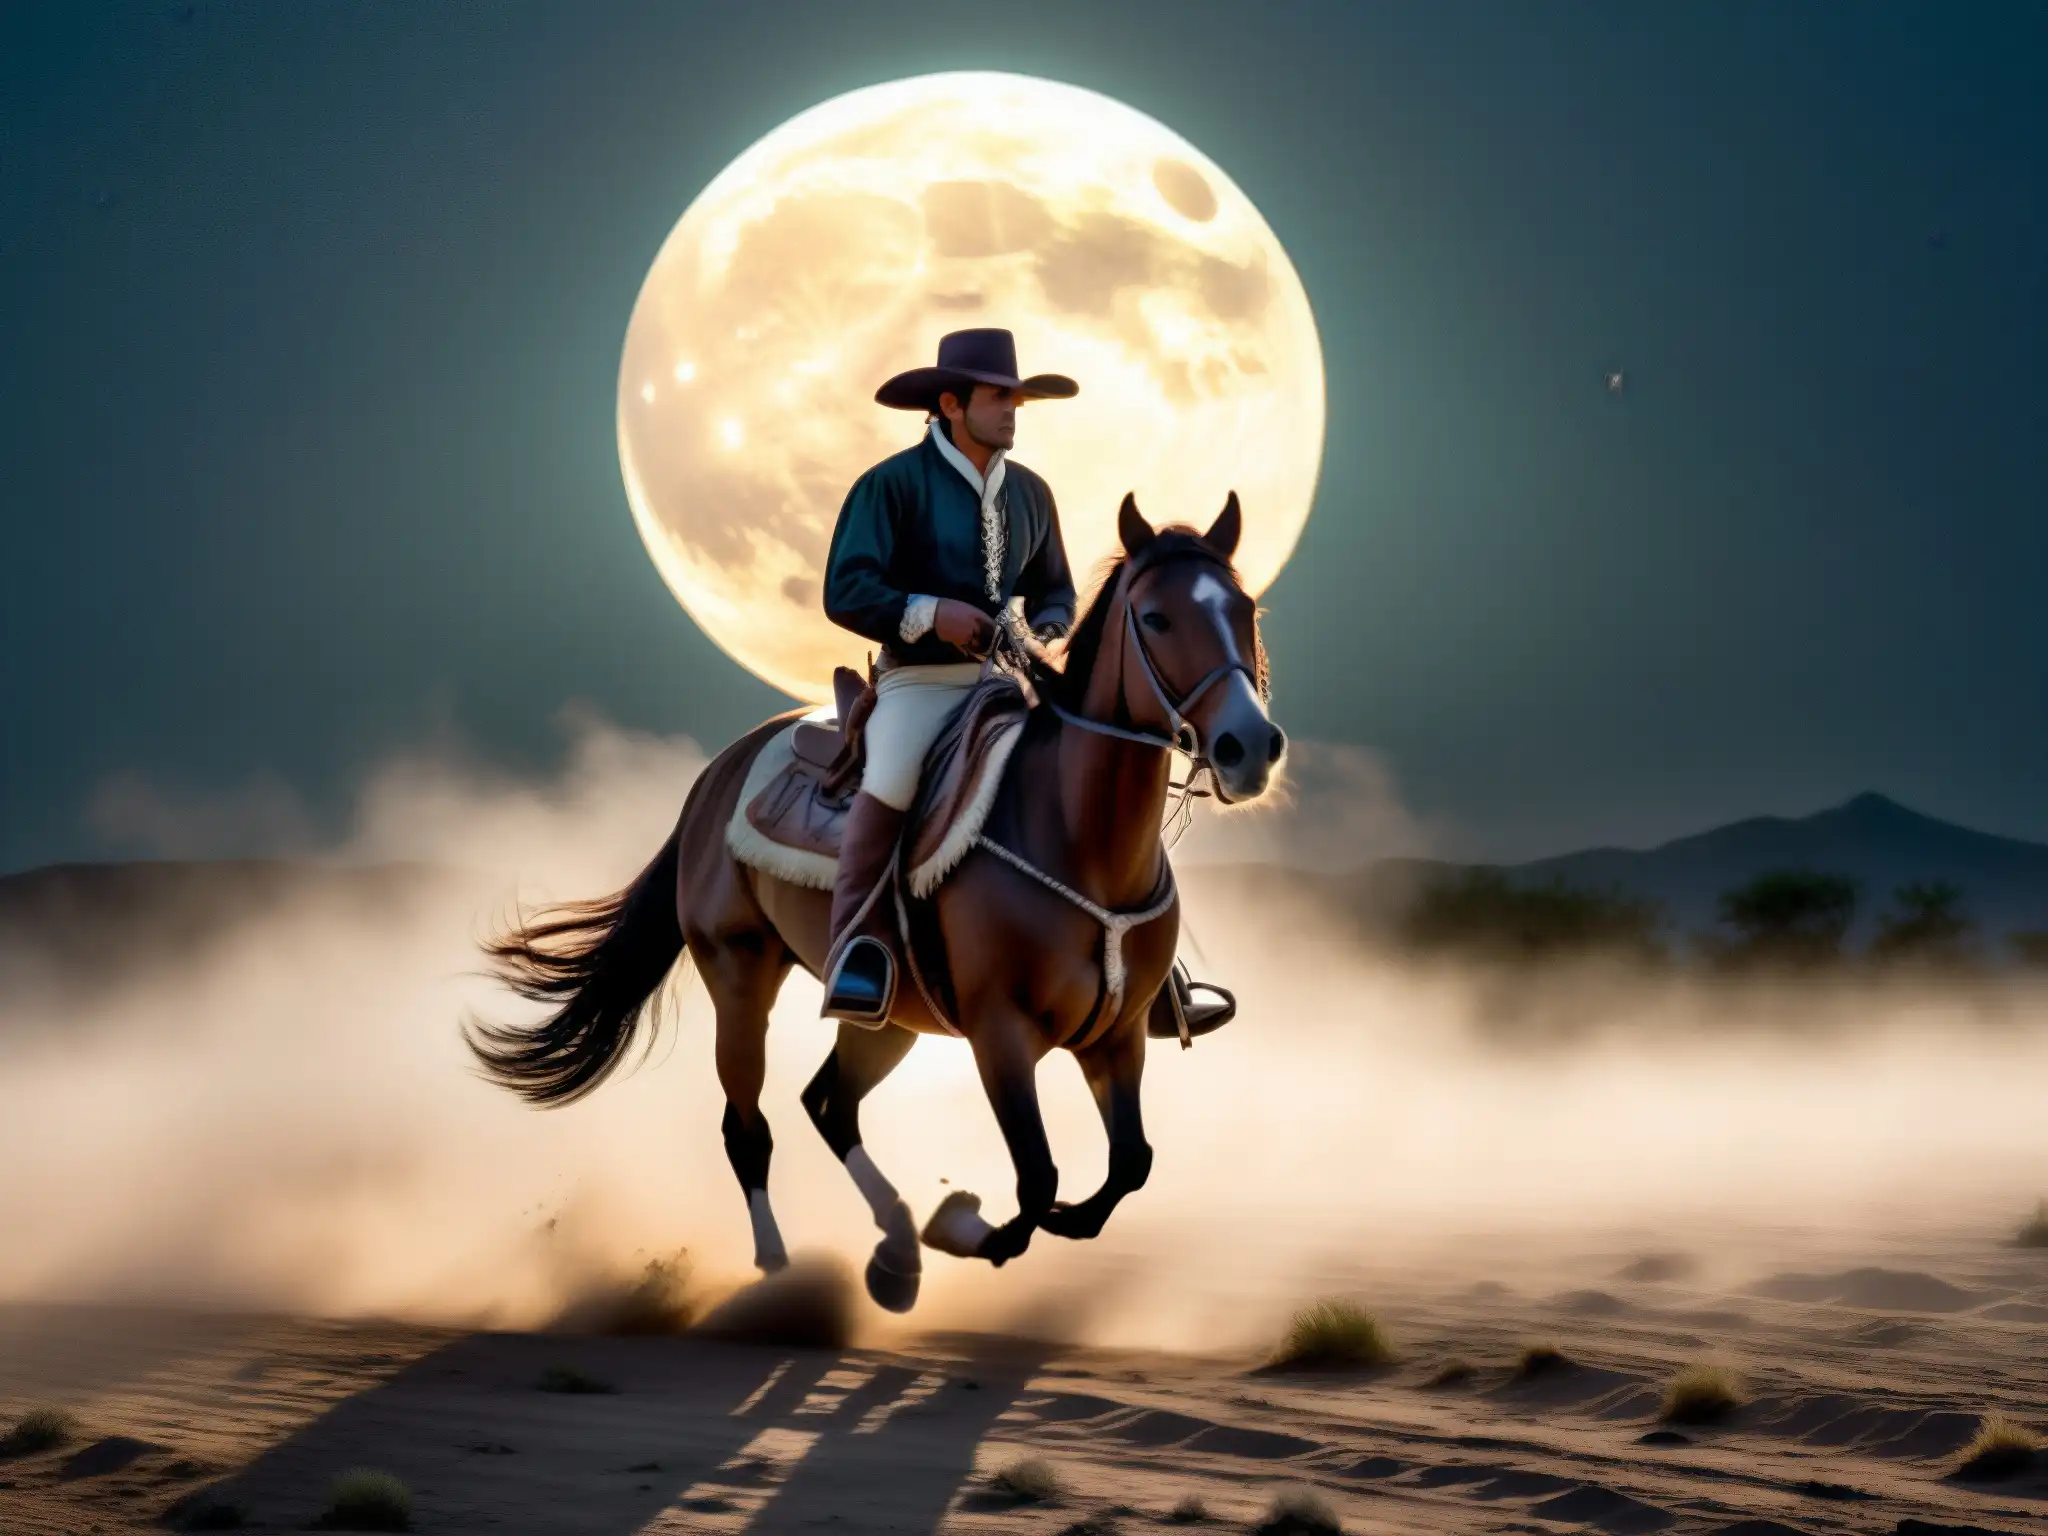 El misterioso Charro Negro cabalga en la noche, evocando el origen y significado del Charro Negro en la mitología mexicana